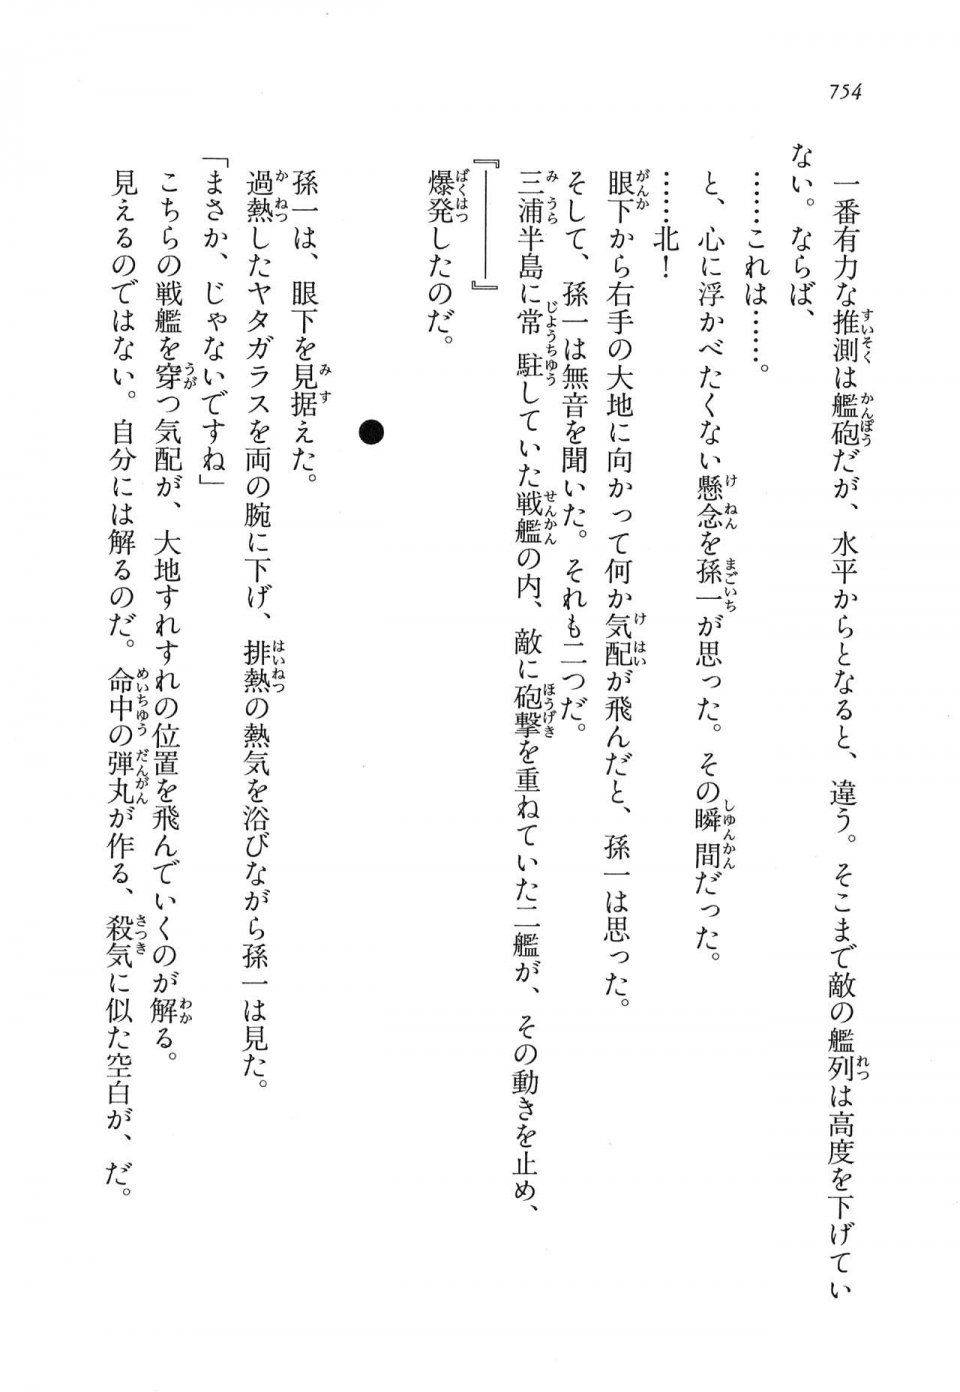 Kyoukai Senjou no Horizon LN Vol 16(7A) - Photo #754